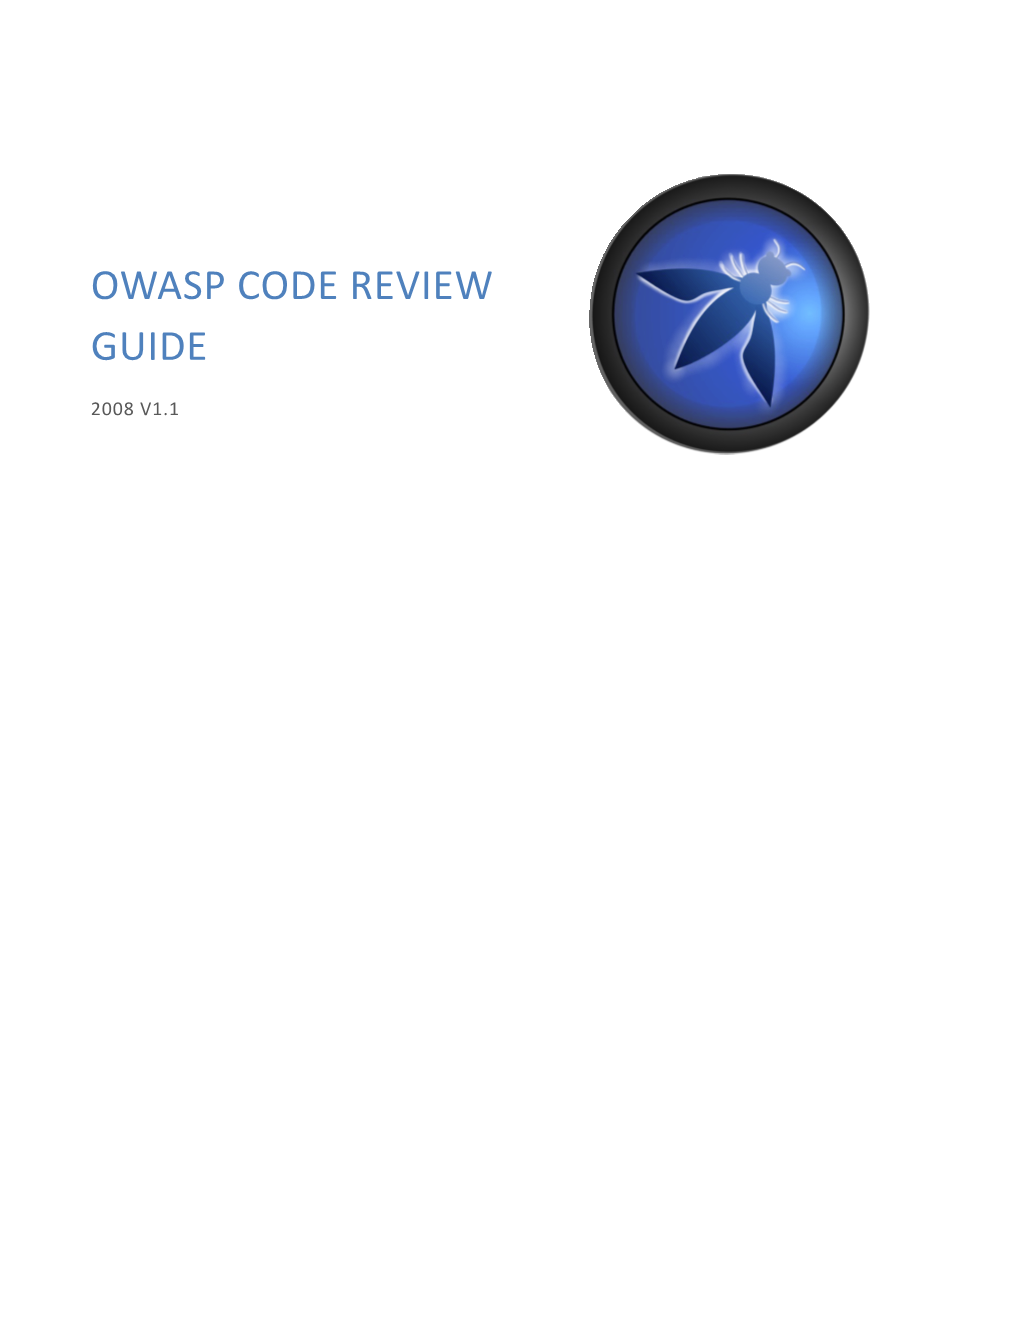 OWASP Code Review Guide V1.1 2008